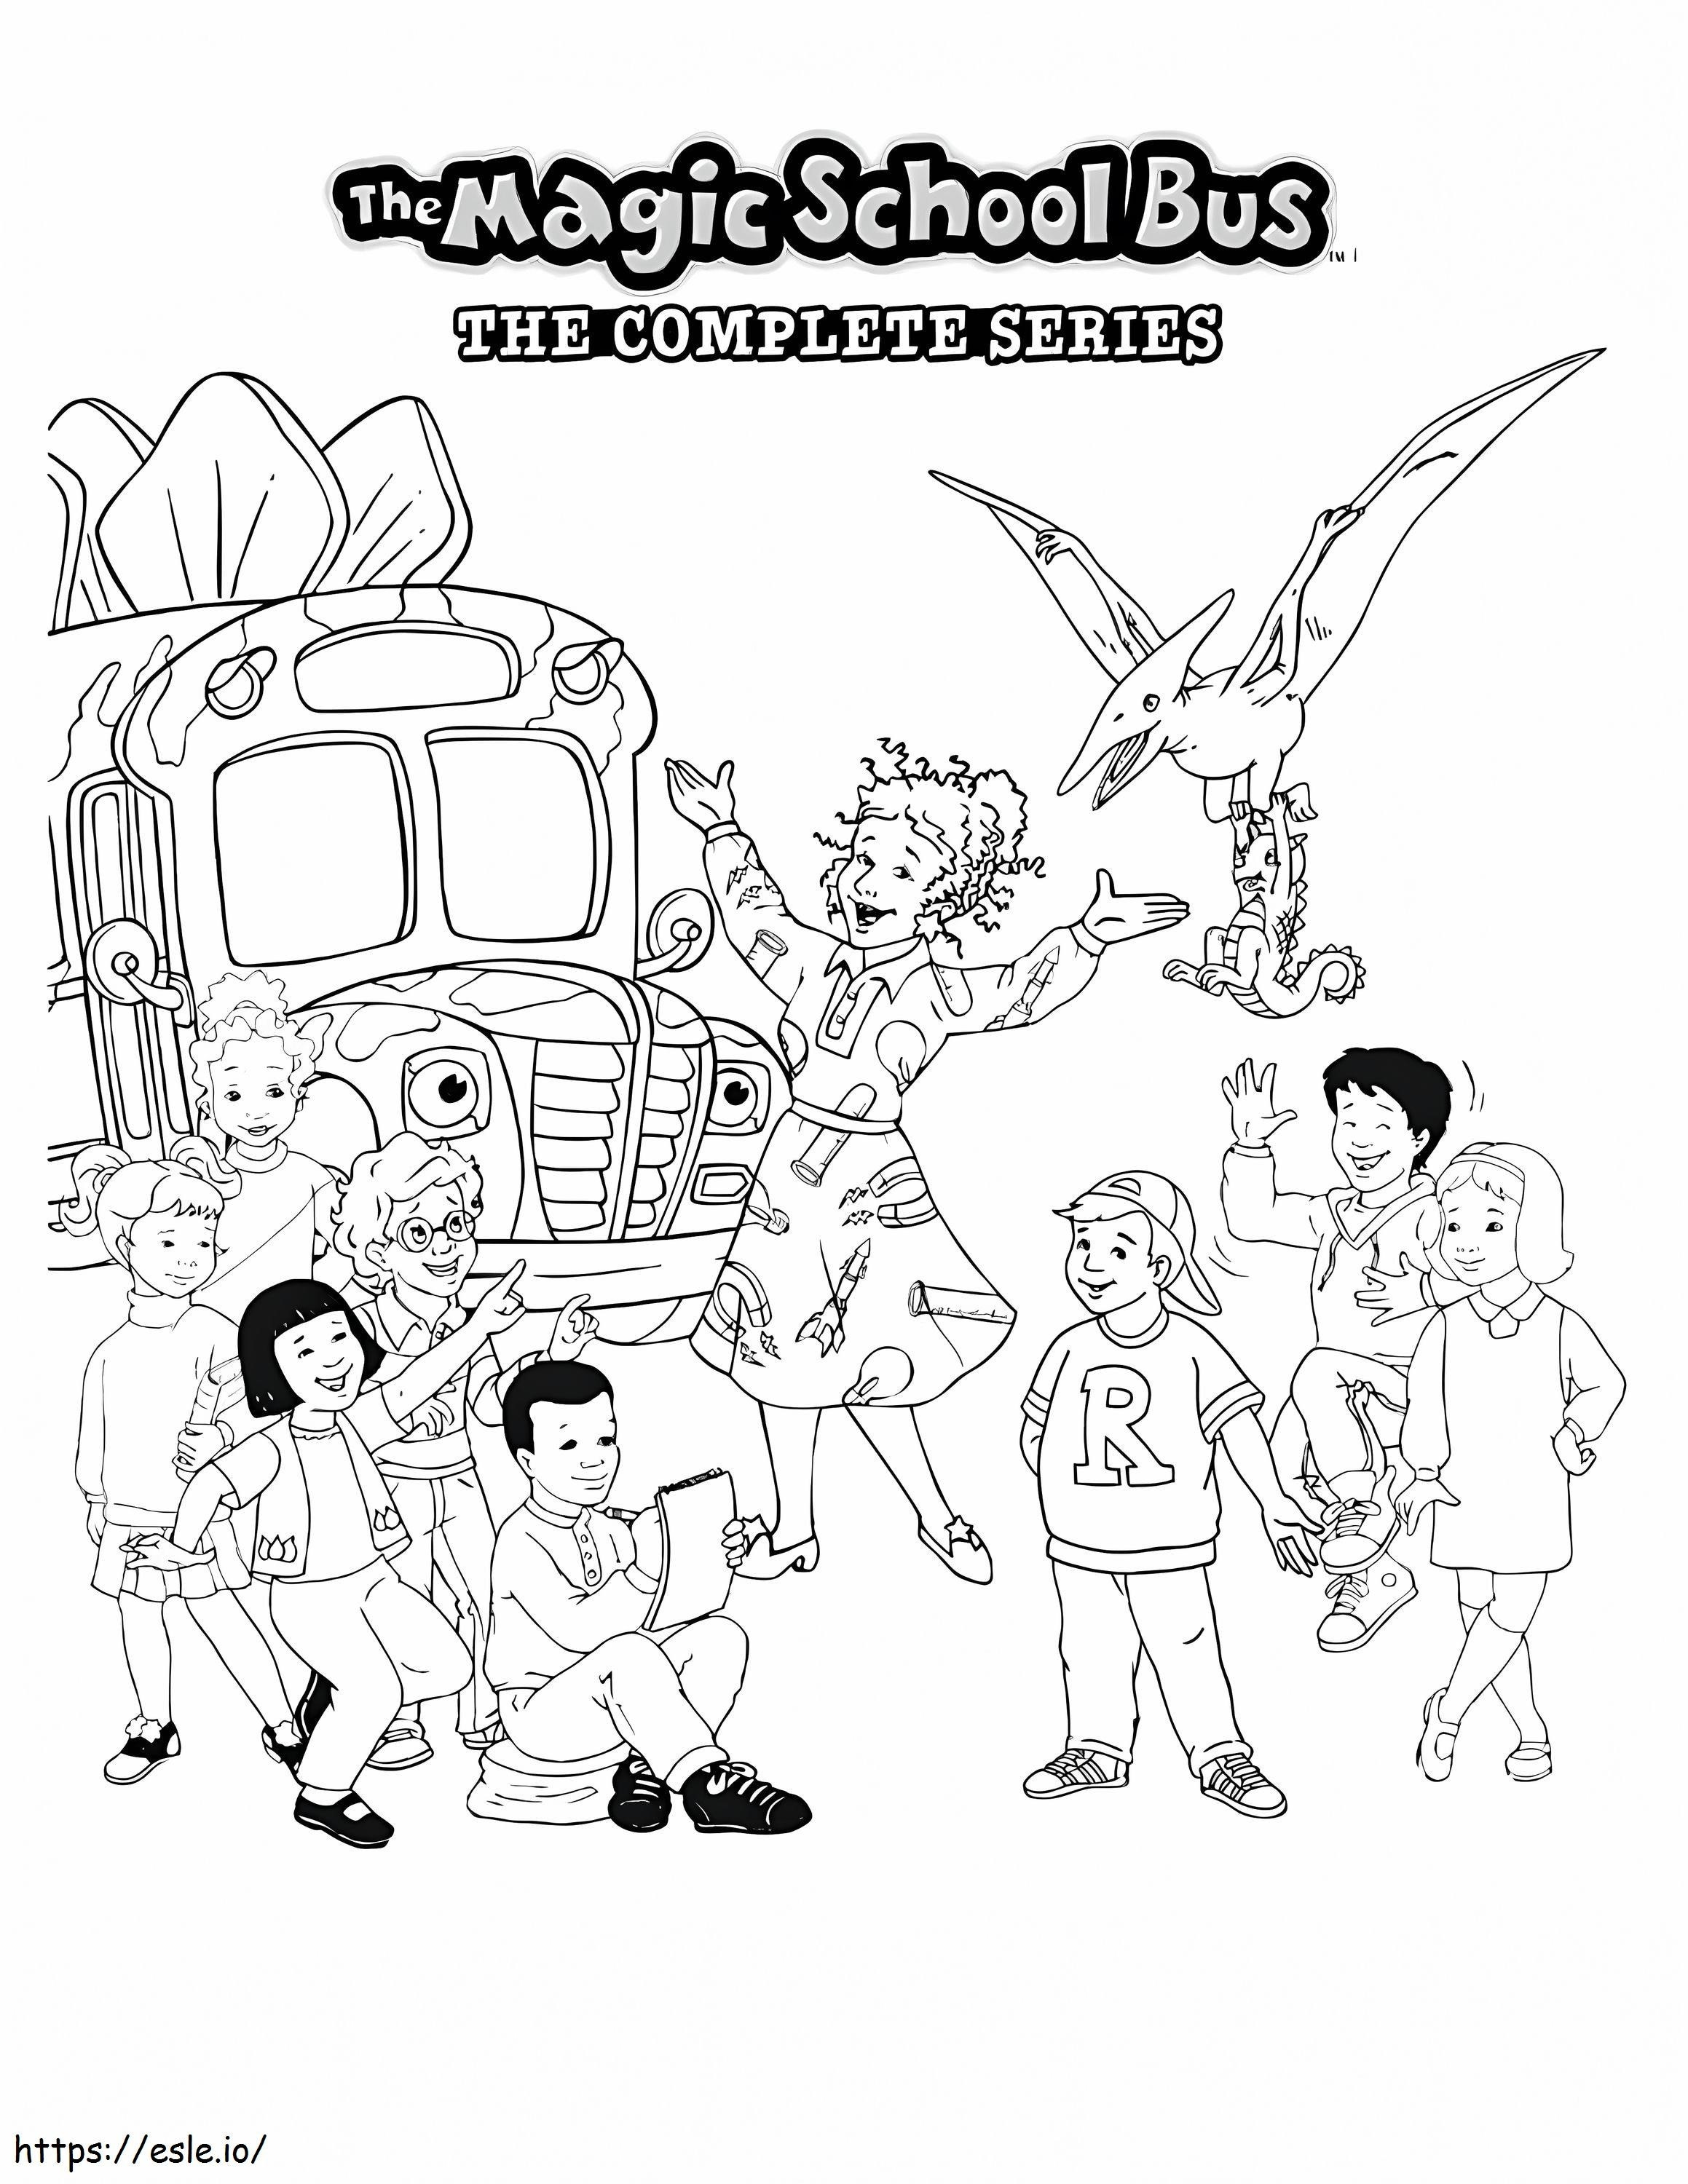 Magic School Bus coloring page